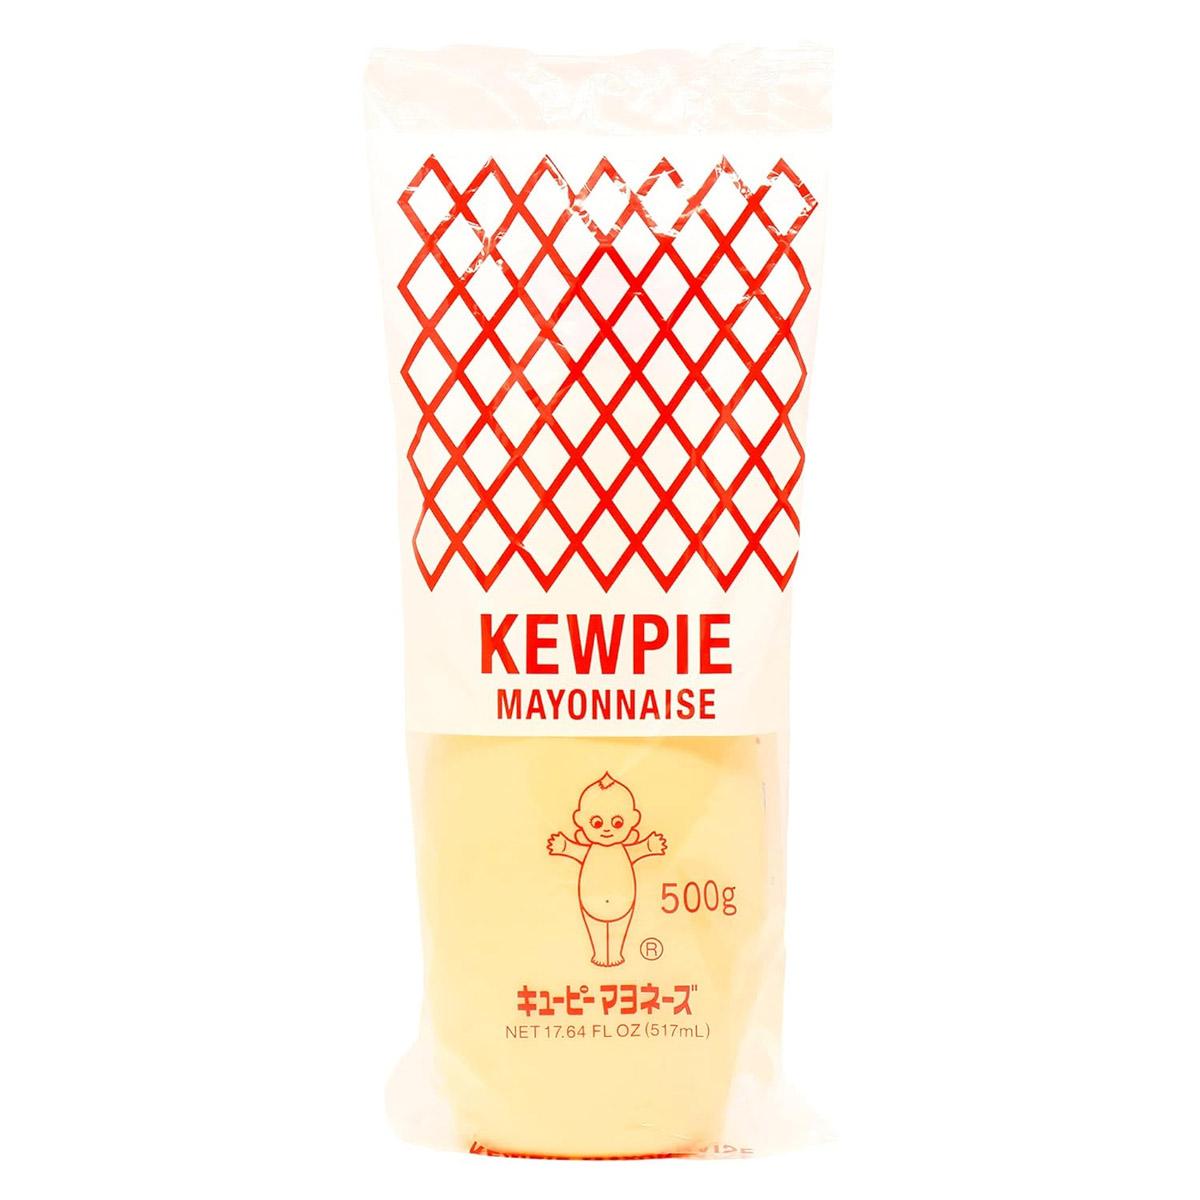 Kewpie Mayonaise Tubes 2 Pack for $7.23